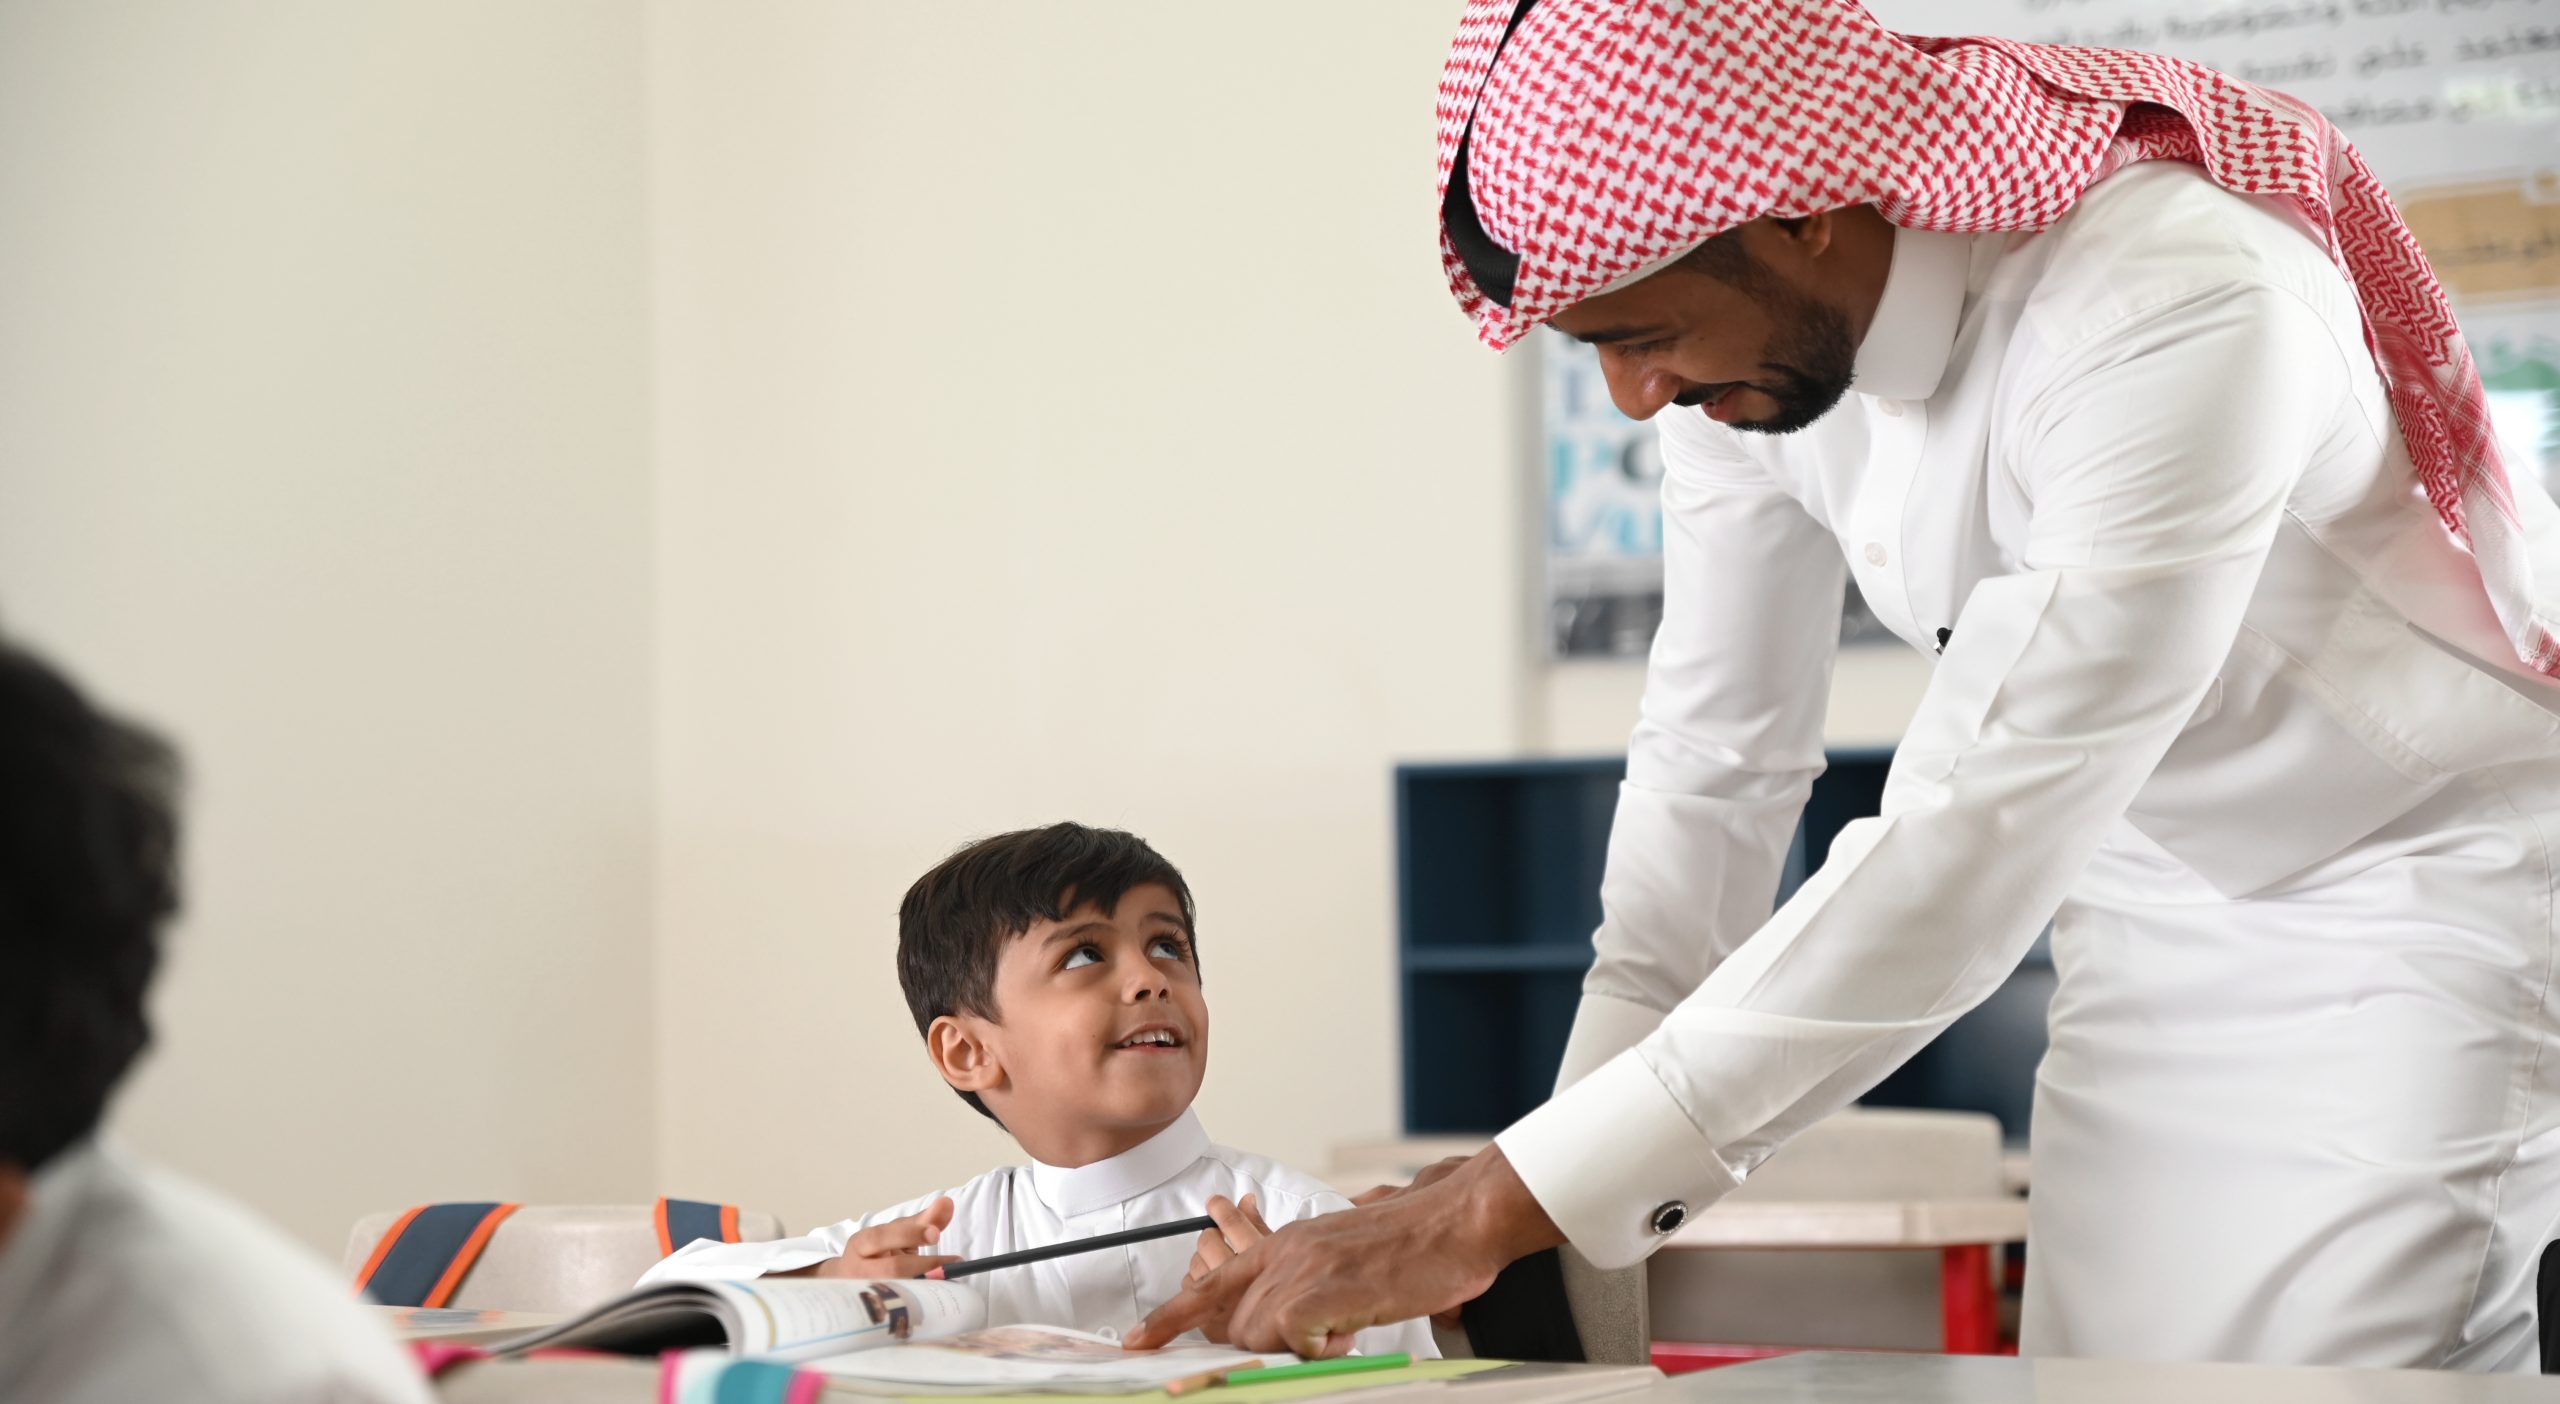  هل تجلب مهنة التعليم في السعودية مكانة اجتماعية مرموقة ورضا وظيفي؟